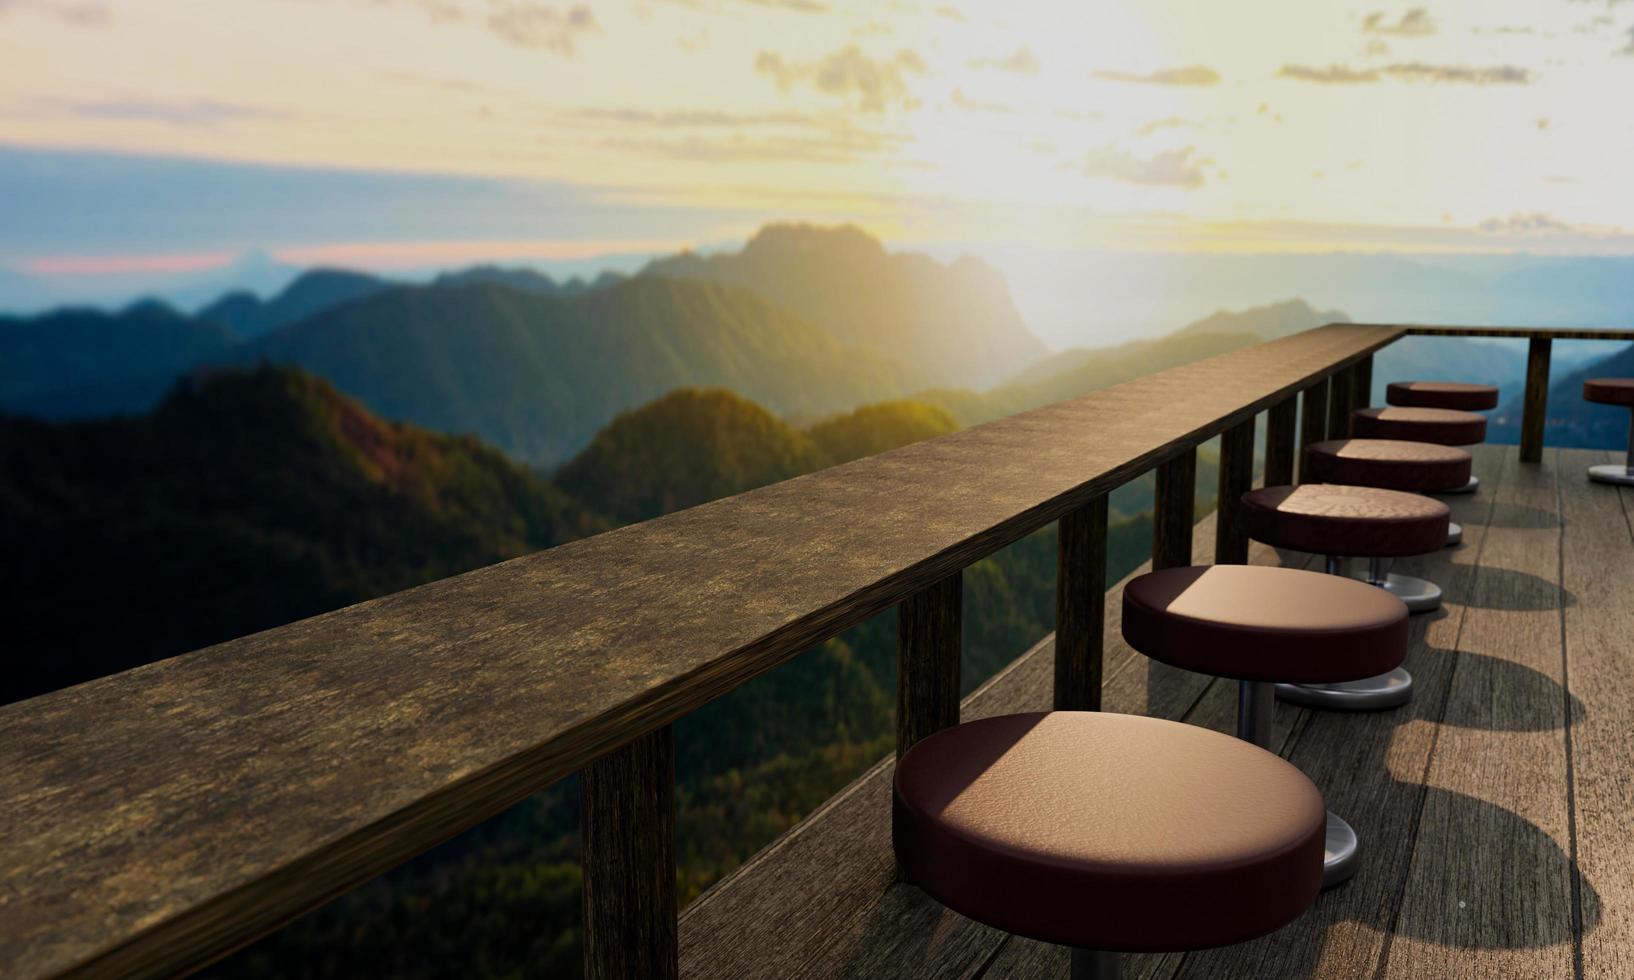 ein Restaurant oder Café hat eine bergige Landschaft und etwas Morgennebel. das Sonnenlicht auf der Spitze des Hügels. balkon- oder terrassendielenböden und lange tische aus holz und holz.3d-rendering foto